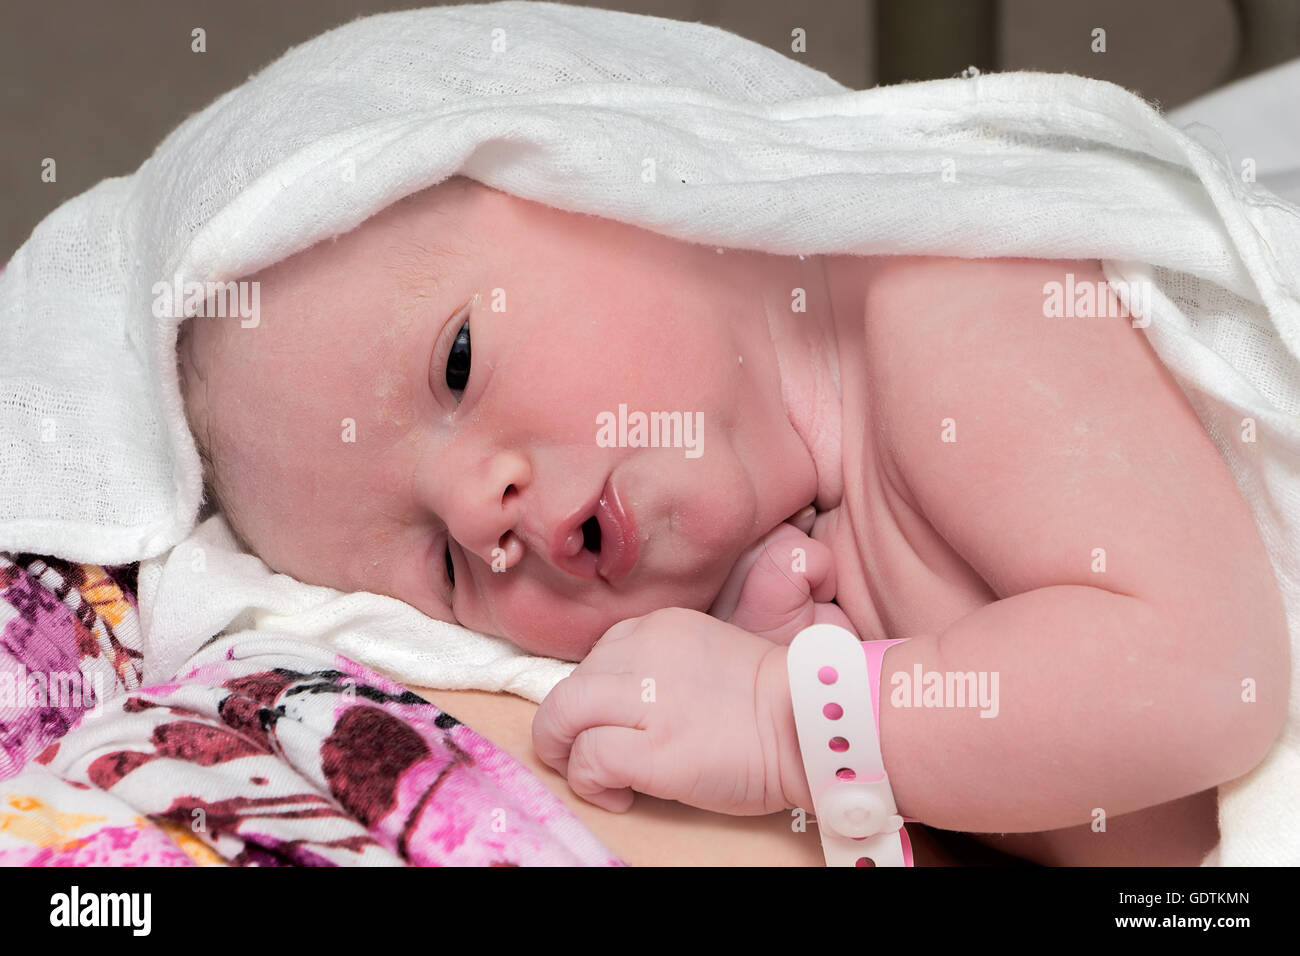 Bebé recién nacido, niña, inmediatamente después del parto descansando con su madre Foto de stock